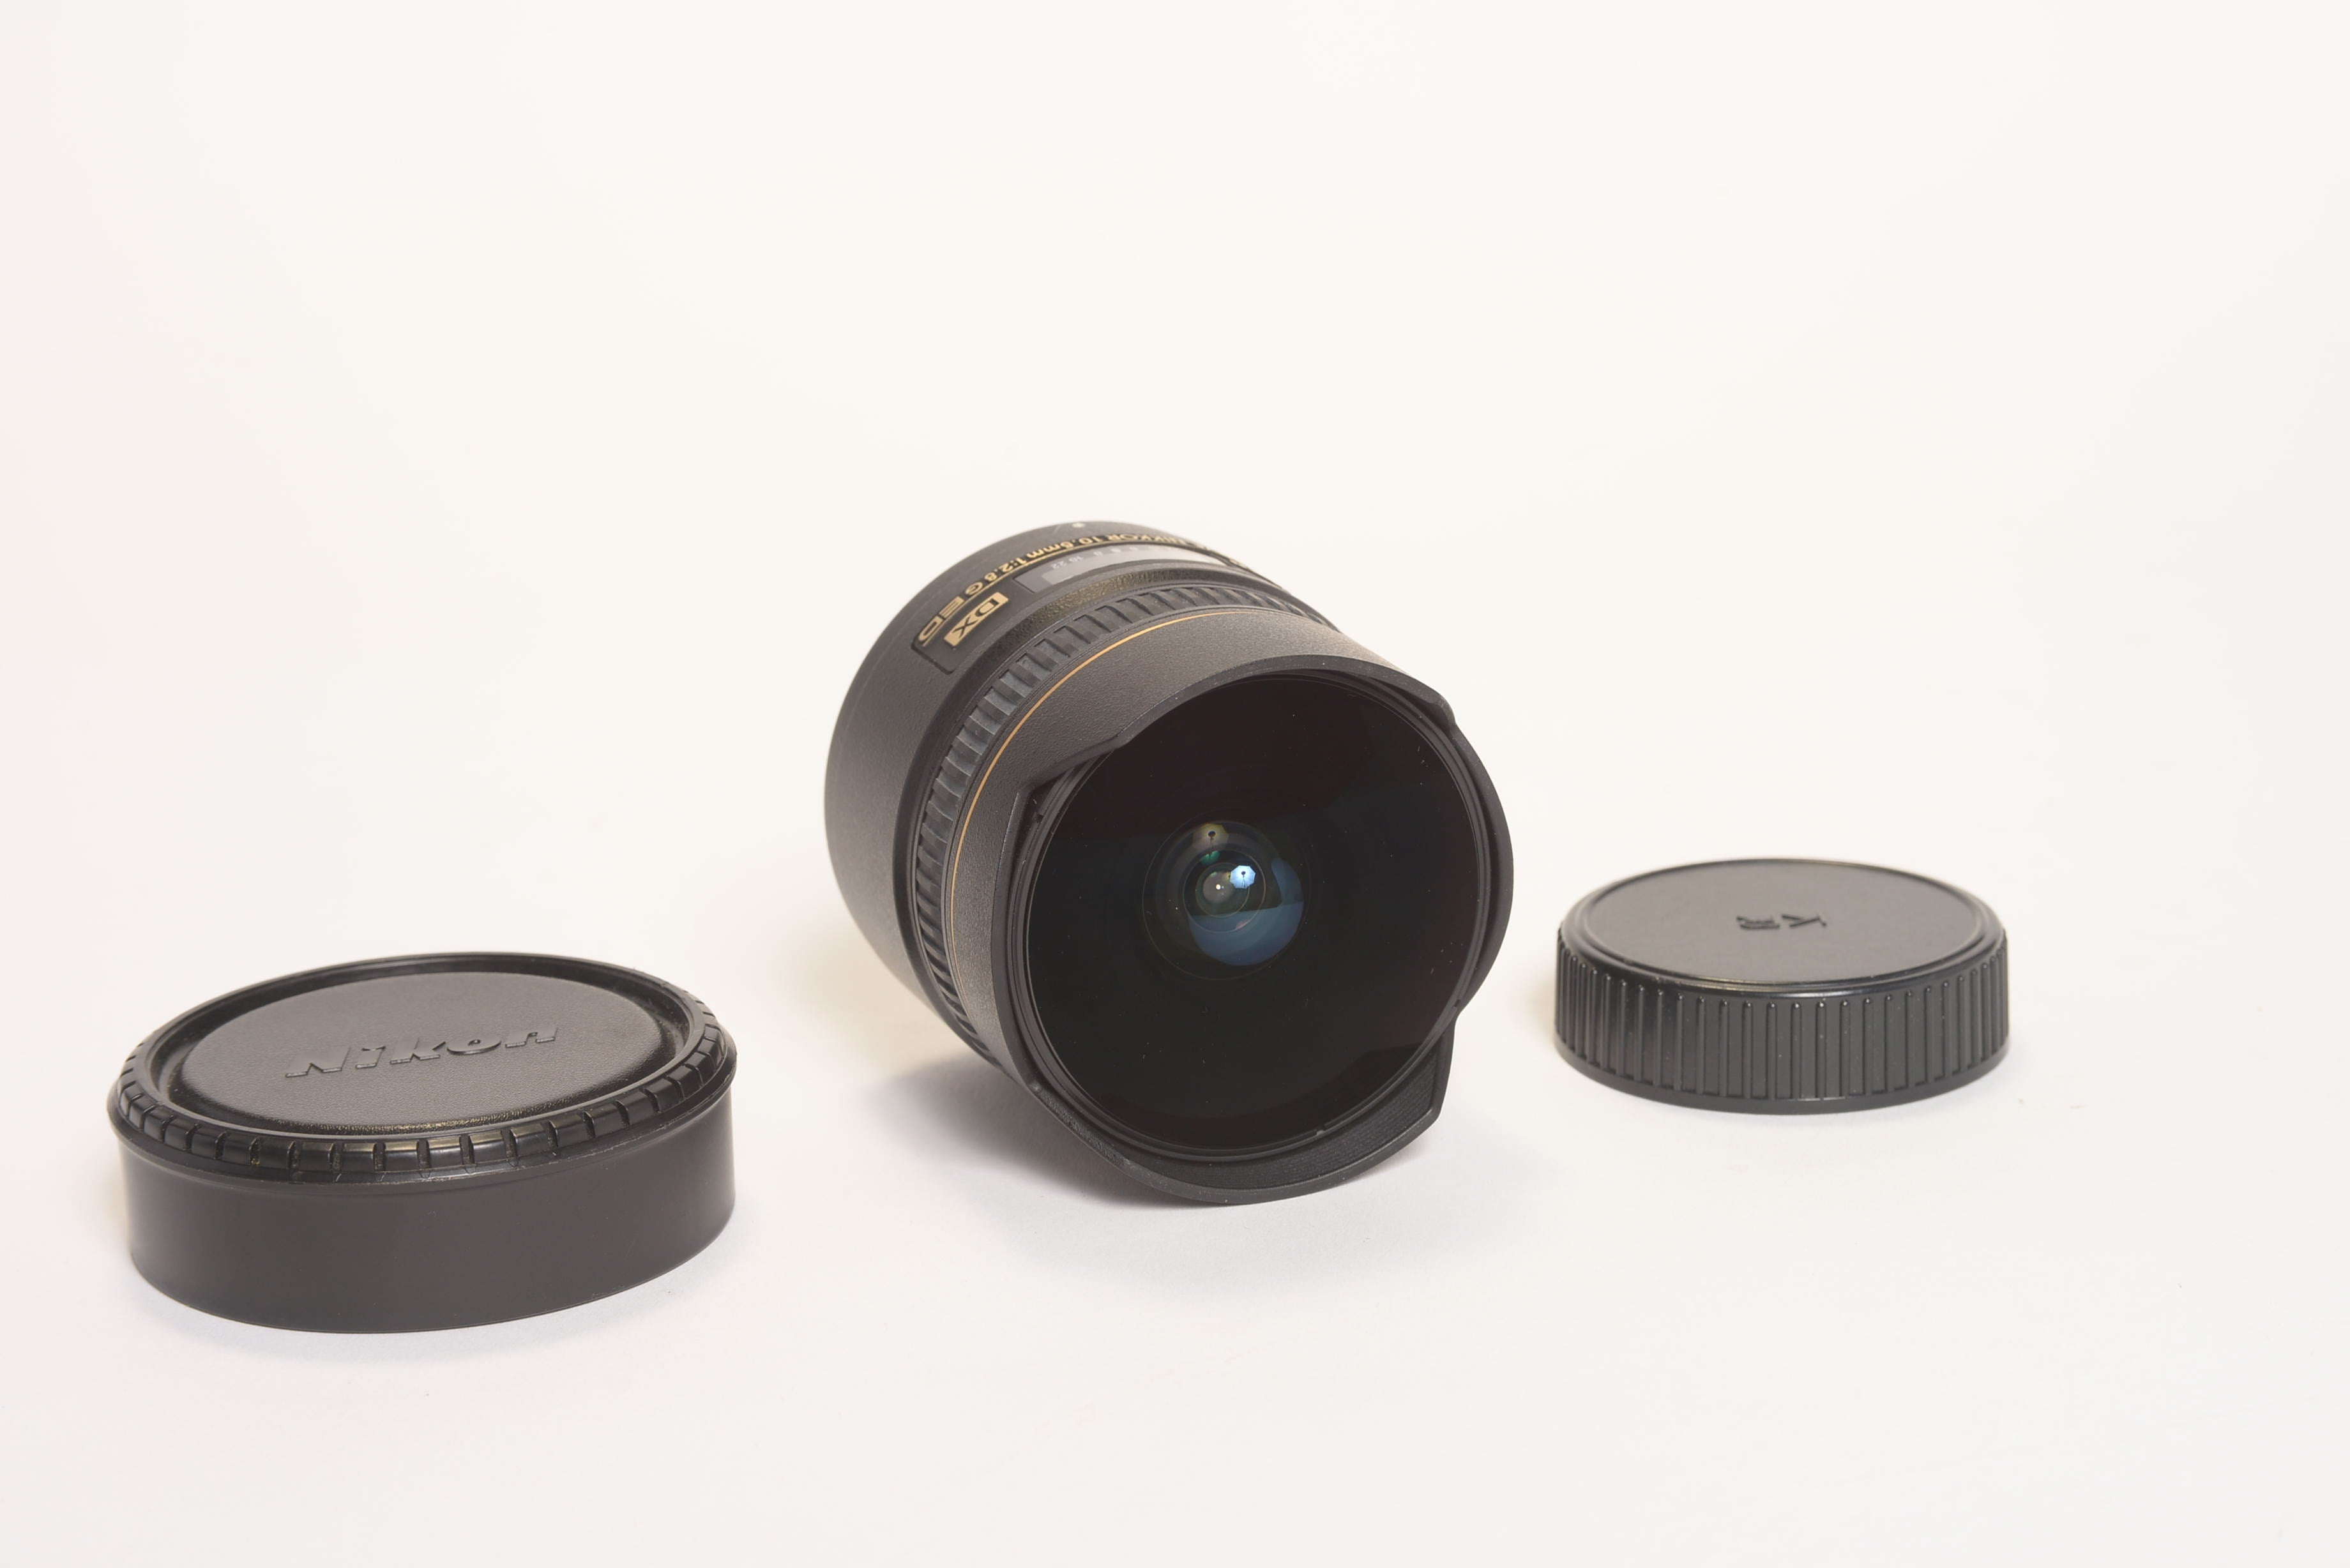 Nikon DX- AF Fisheye Nikkor 10.5 2.8 GED-DX | PDR - Film u0026 Photography